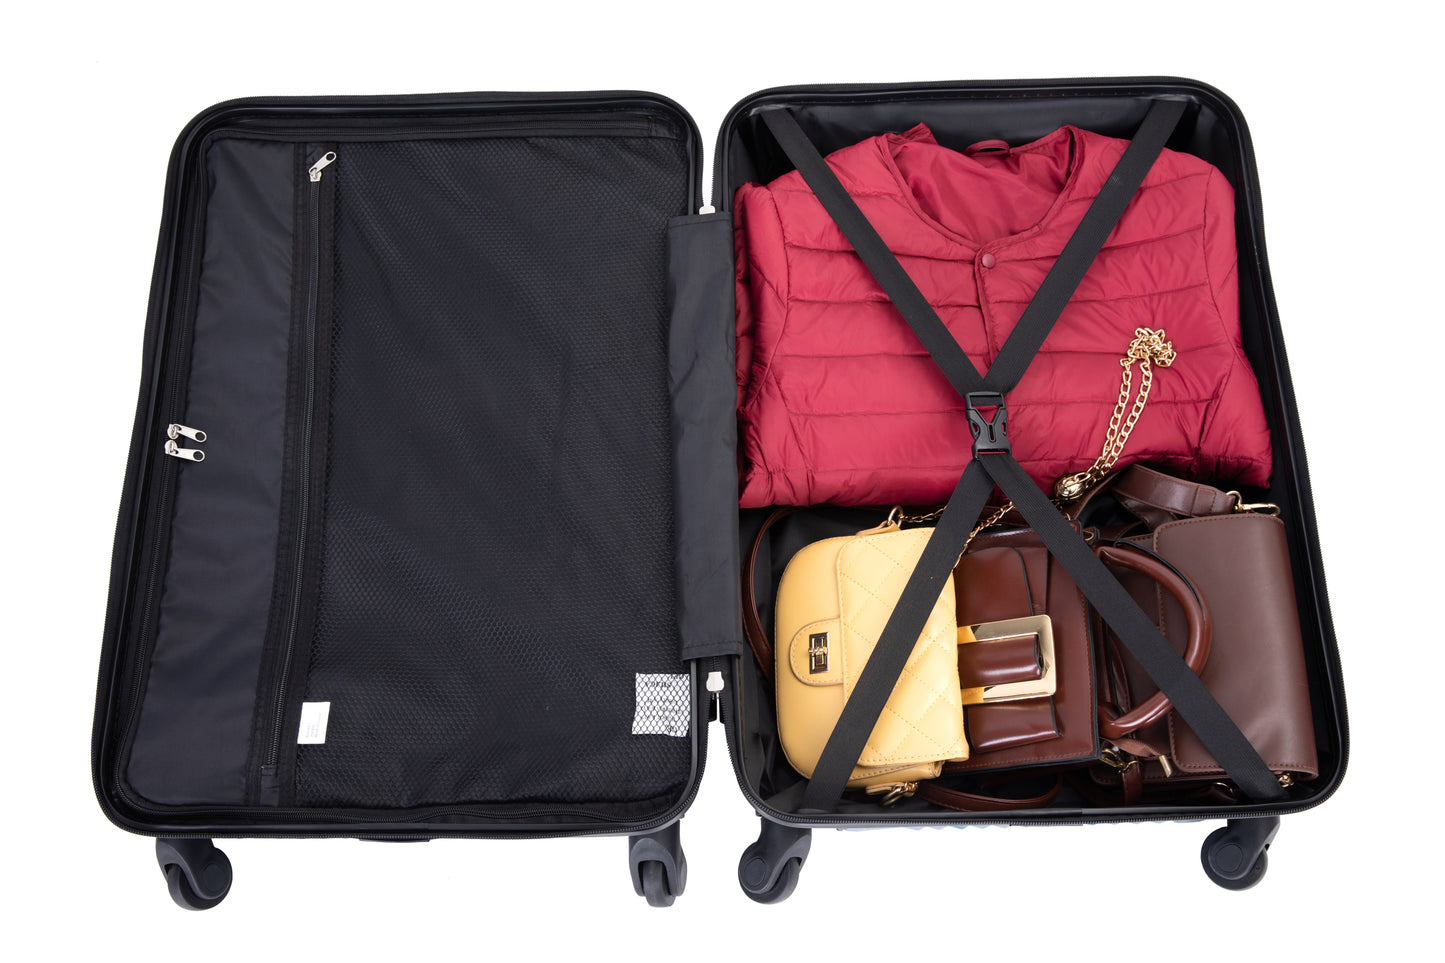 Ensembles de bagages 3 pièces PC + ABS valise légère avec deux crochets roues pivotantes (20/24/28) gris